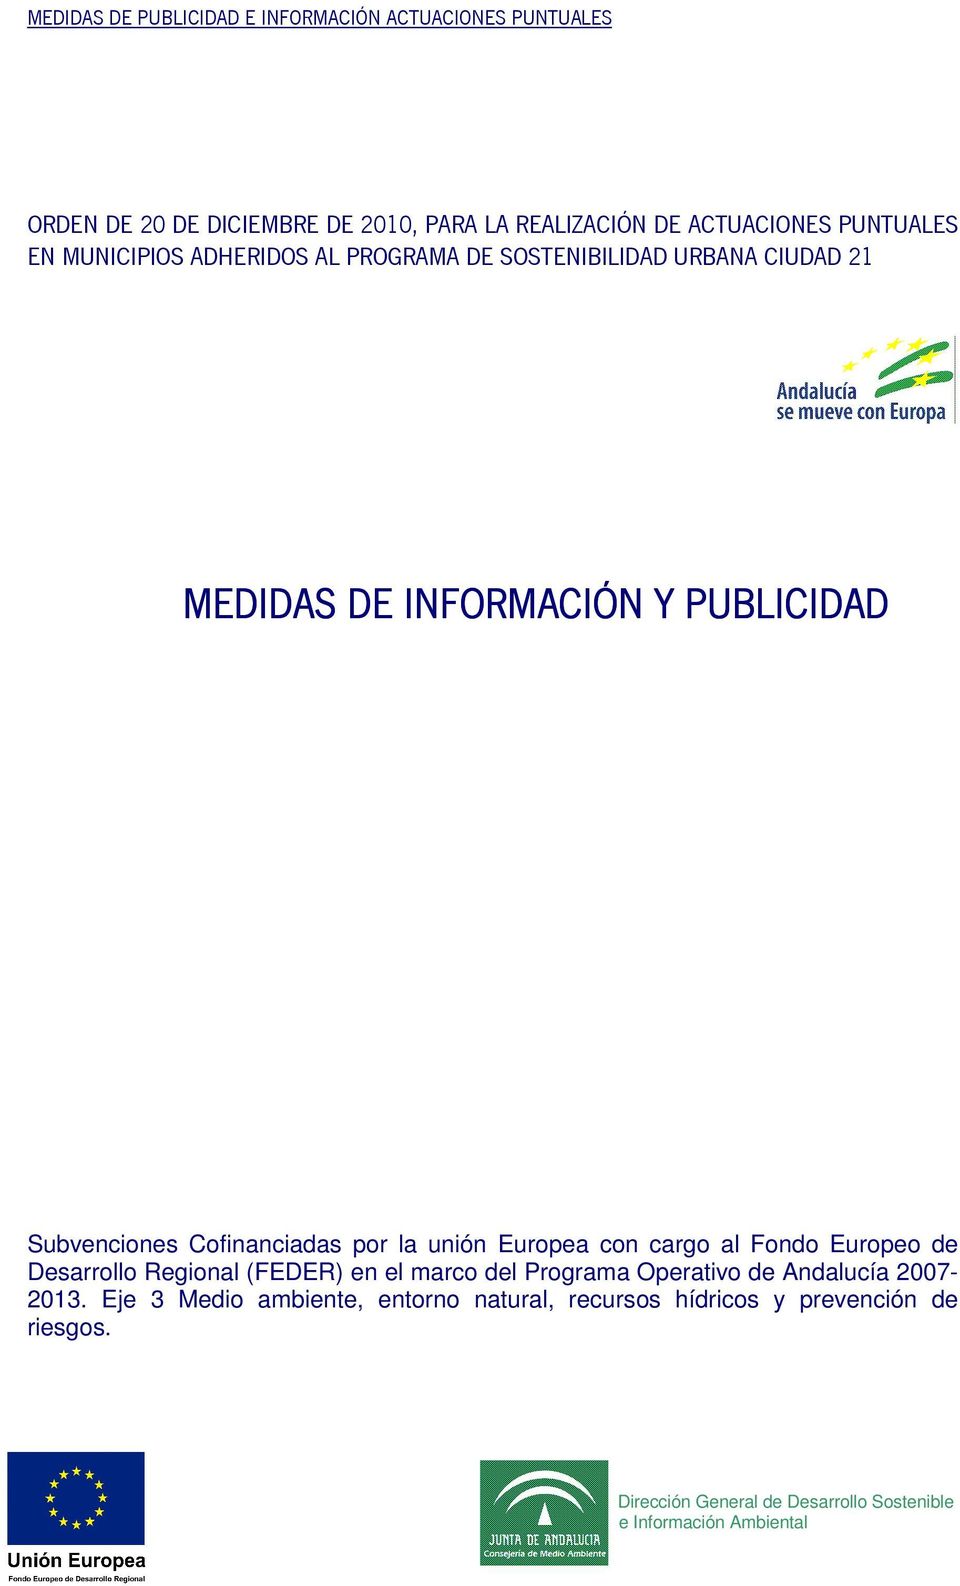 cargo al Fondo Europeo de Desarrollo Regional (FEDER) en el marco del Programa Operativo de Andalucía 2007-2013.